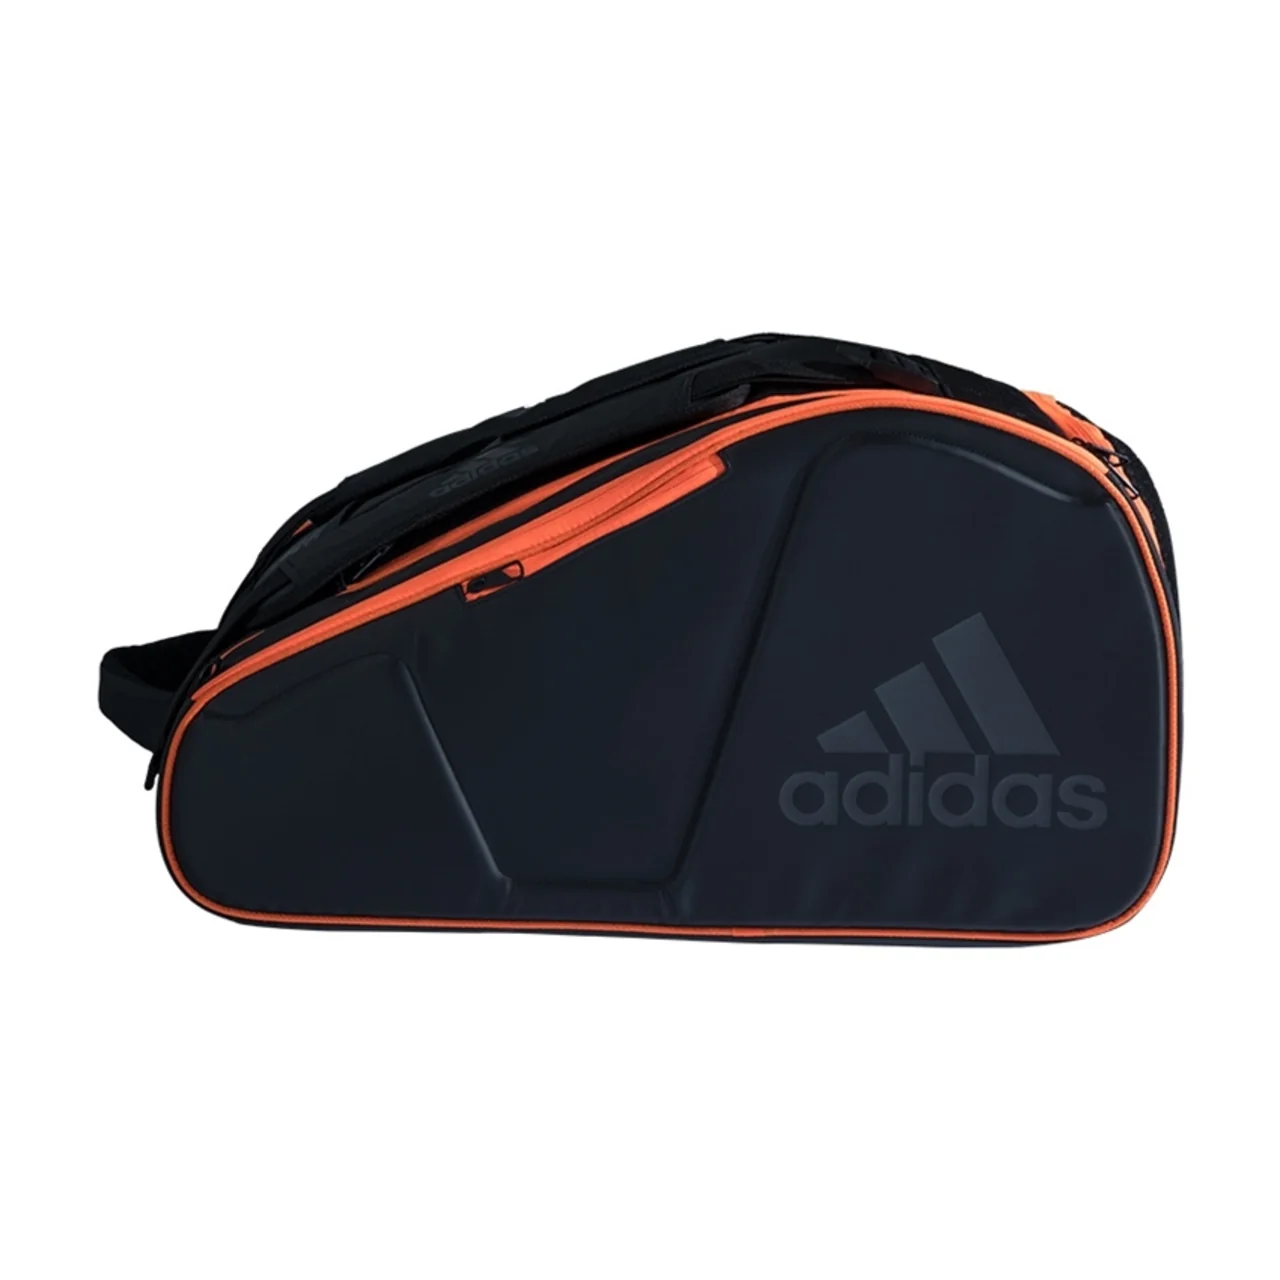 Adidas Racket Bag Pro Tour